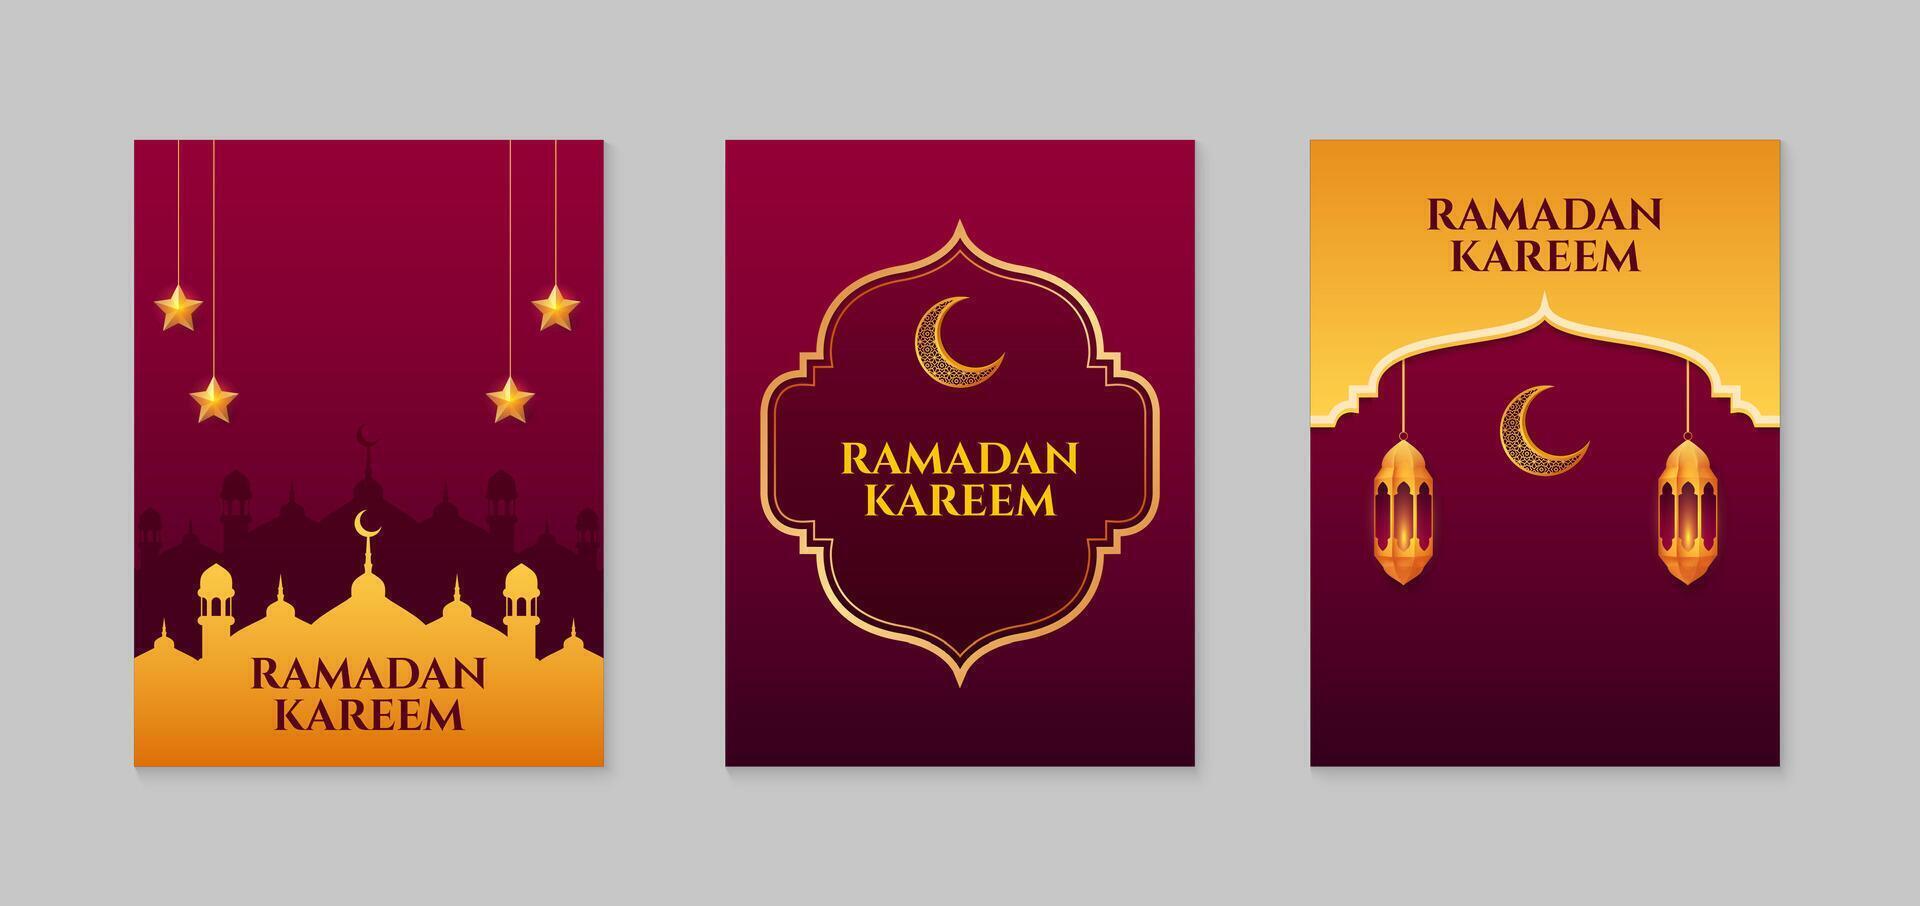 Ramadán kareem conjunto de islámico Ramadán saludo tarjeta modelo con dorado creciente luna, estrellas y mezquita. vector ilustración.